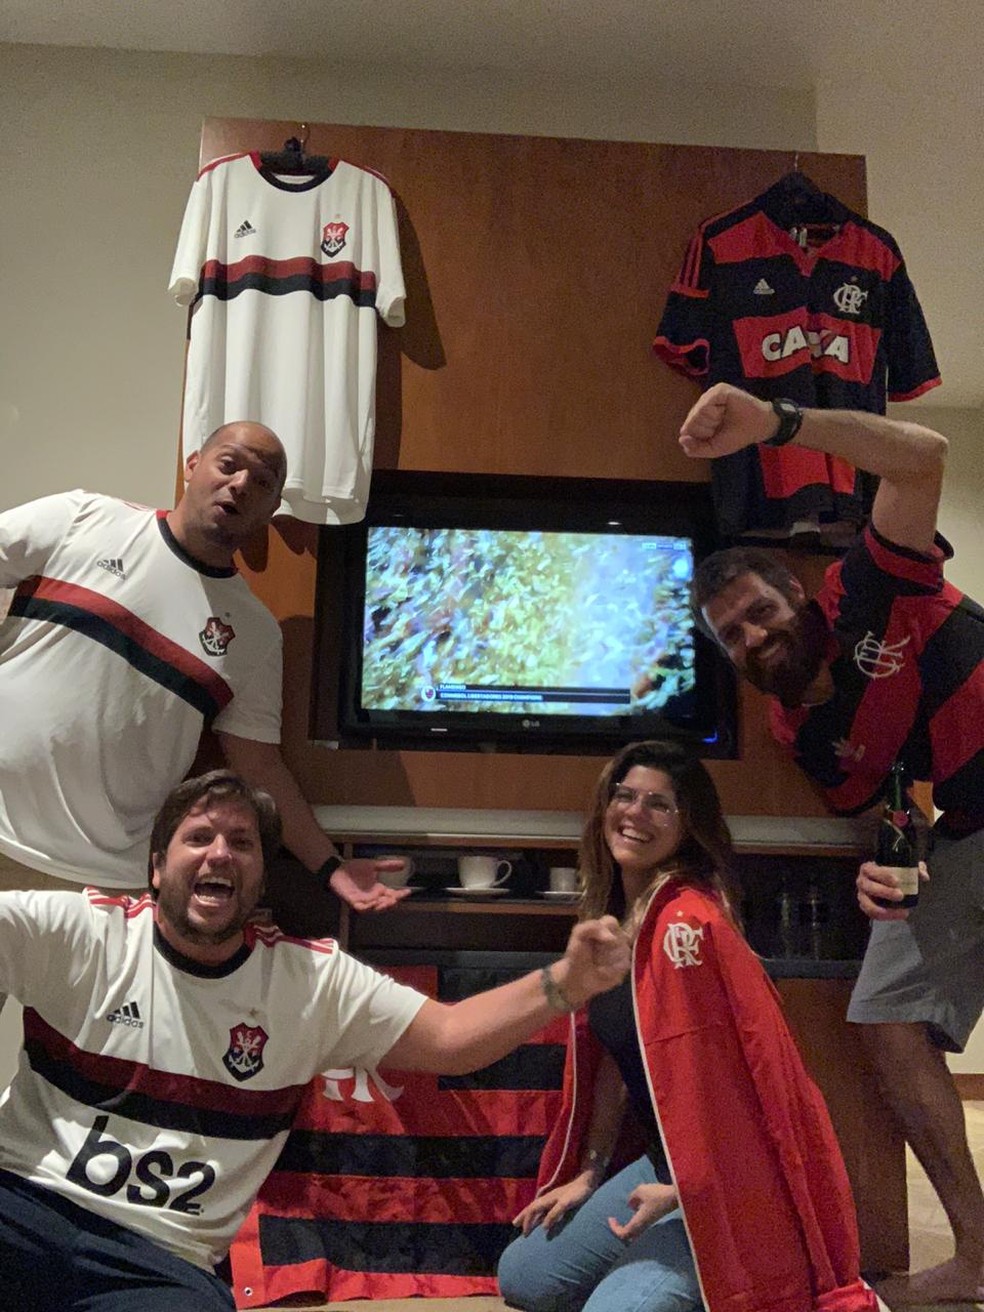 Quatro dos cinco integrantes da Fla Qatar festejam título da Libertadores no quarto ornamentado que serve para reunir em dias de jogos — Foto: Arquivo pessoal